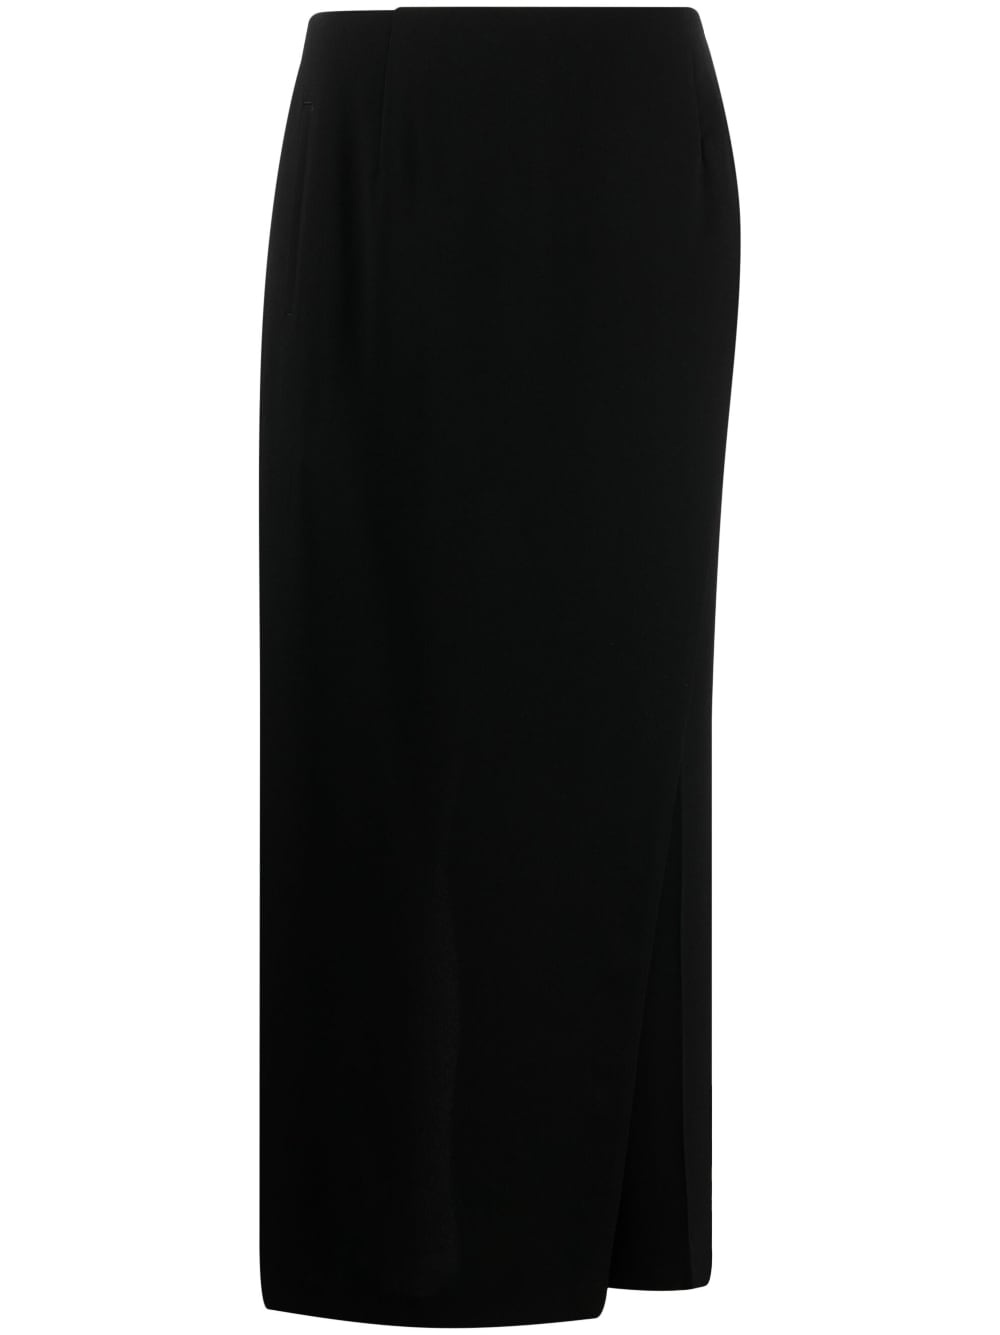 fitted-waistline long skirt - 1